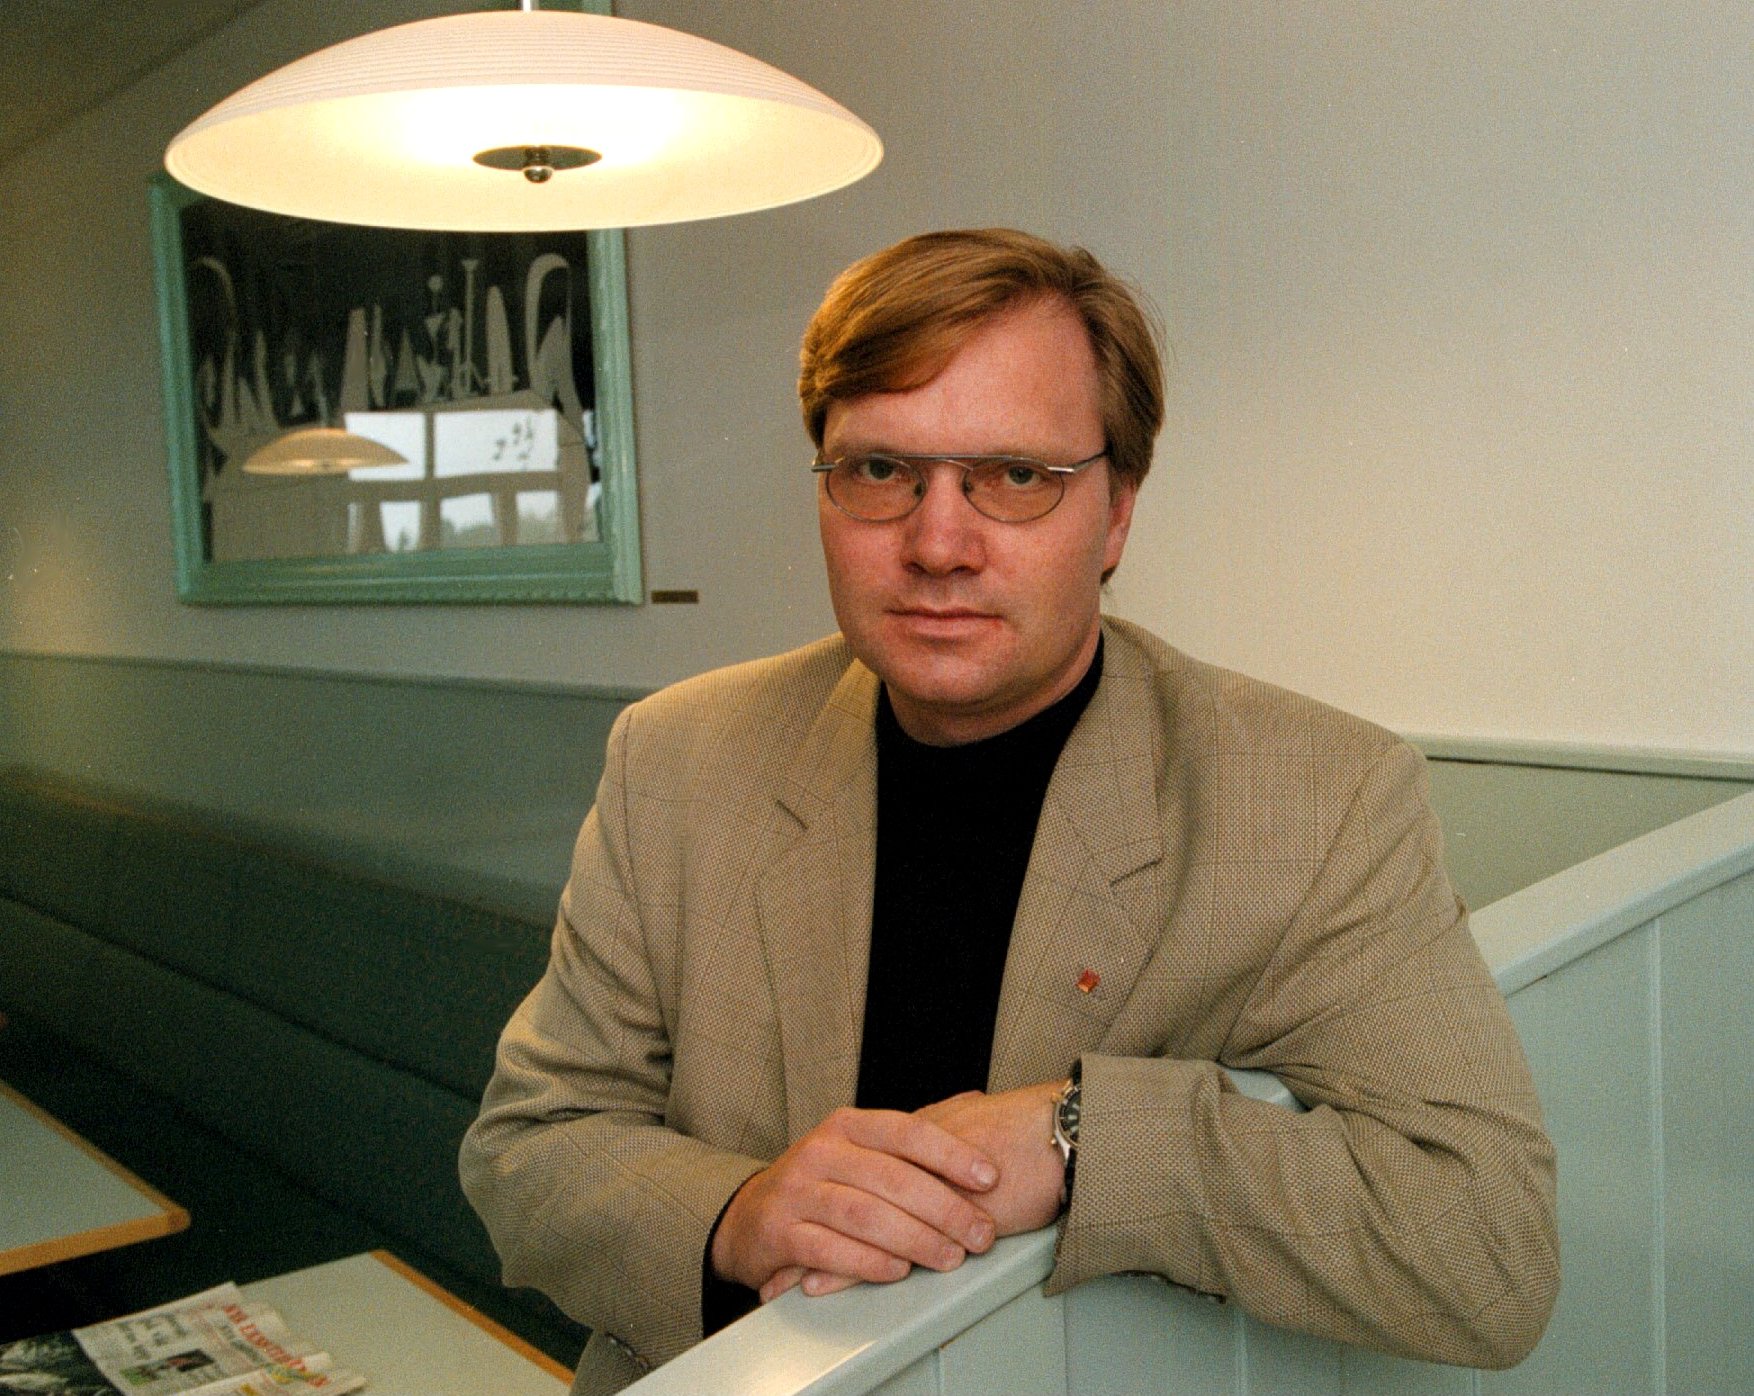 Socialdemokraterna, Kidnappning, Riksdagsvalet 2010, Tomas Rudin, Rödgröna regeringen